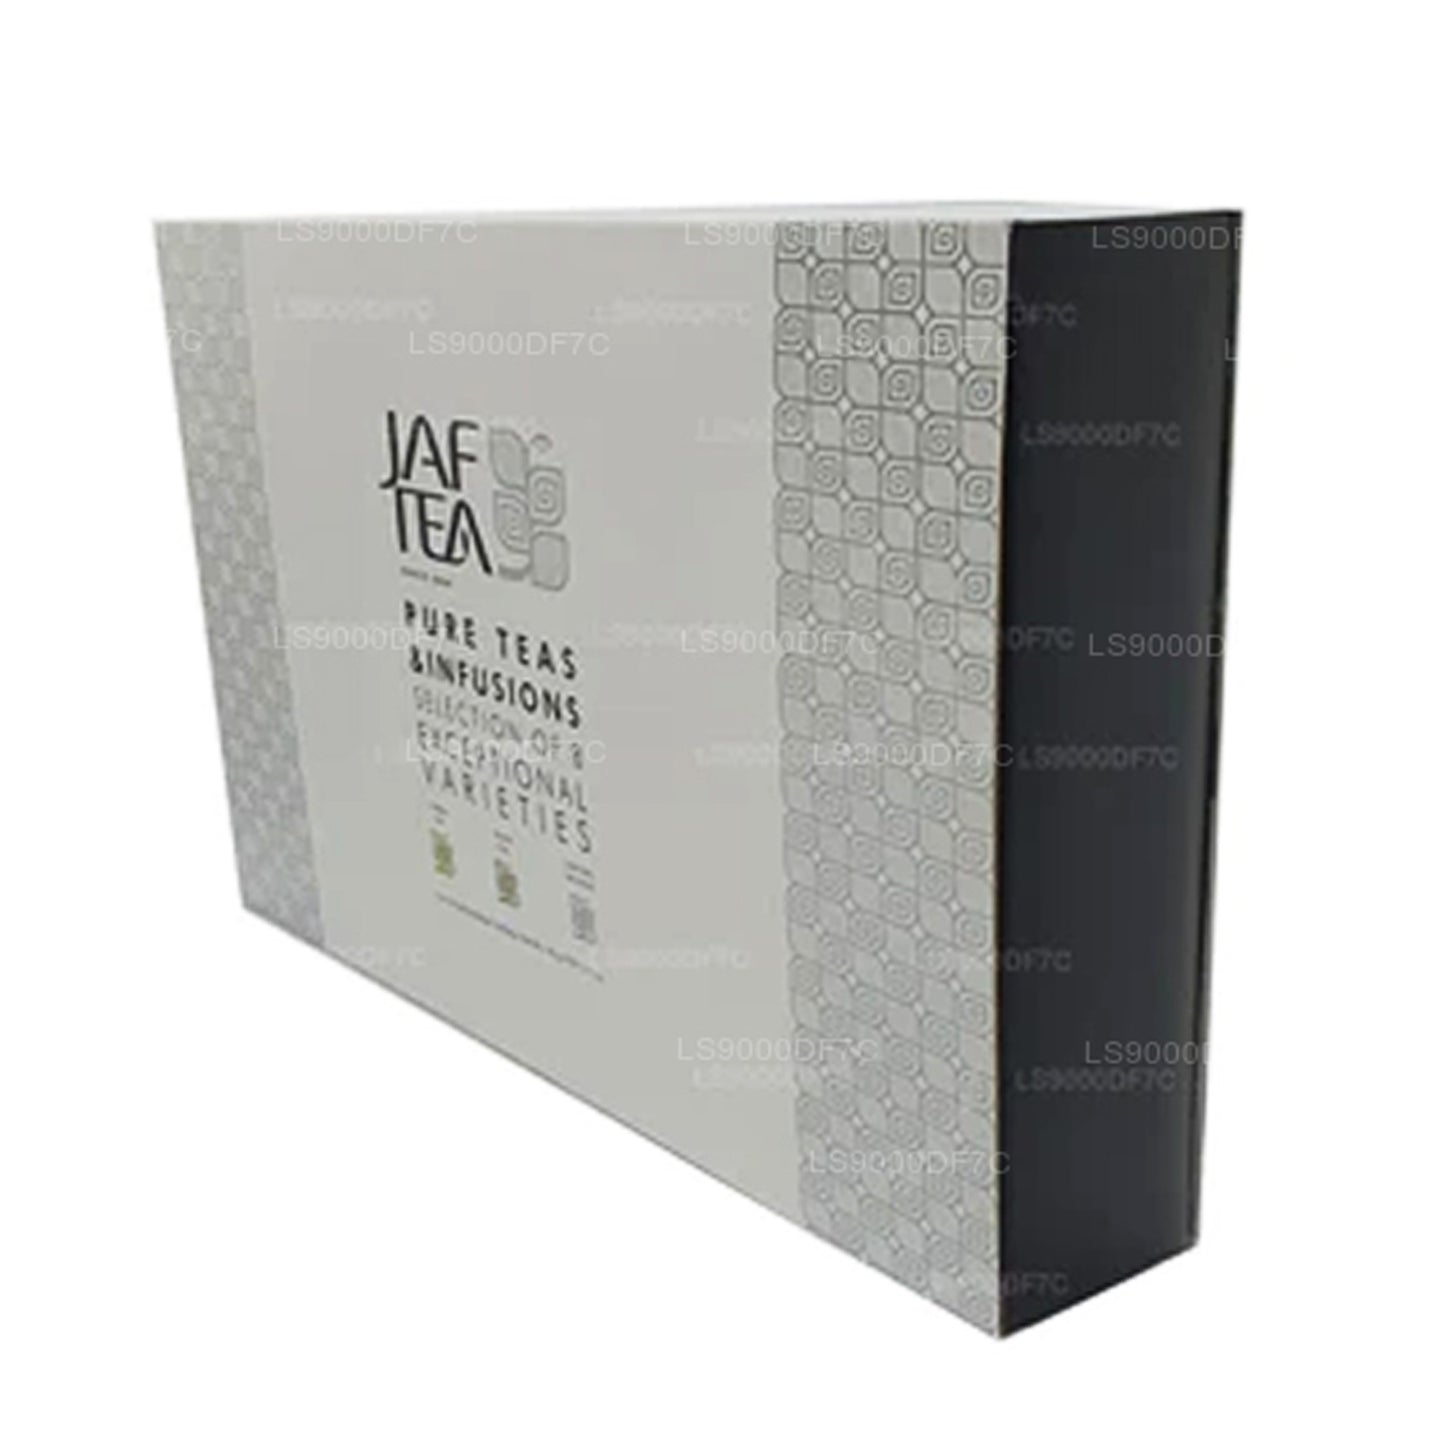 Thés et infusions Jaf Tea Pure (145 g) 80 sachets de thé